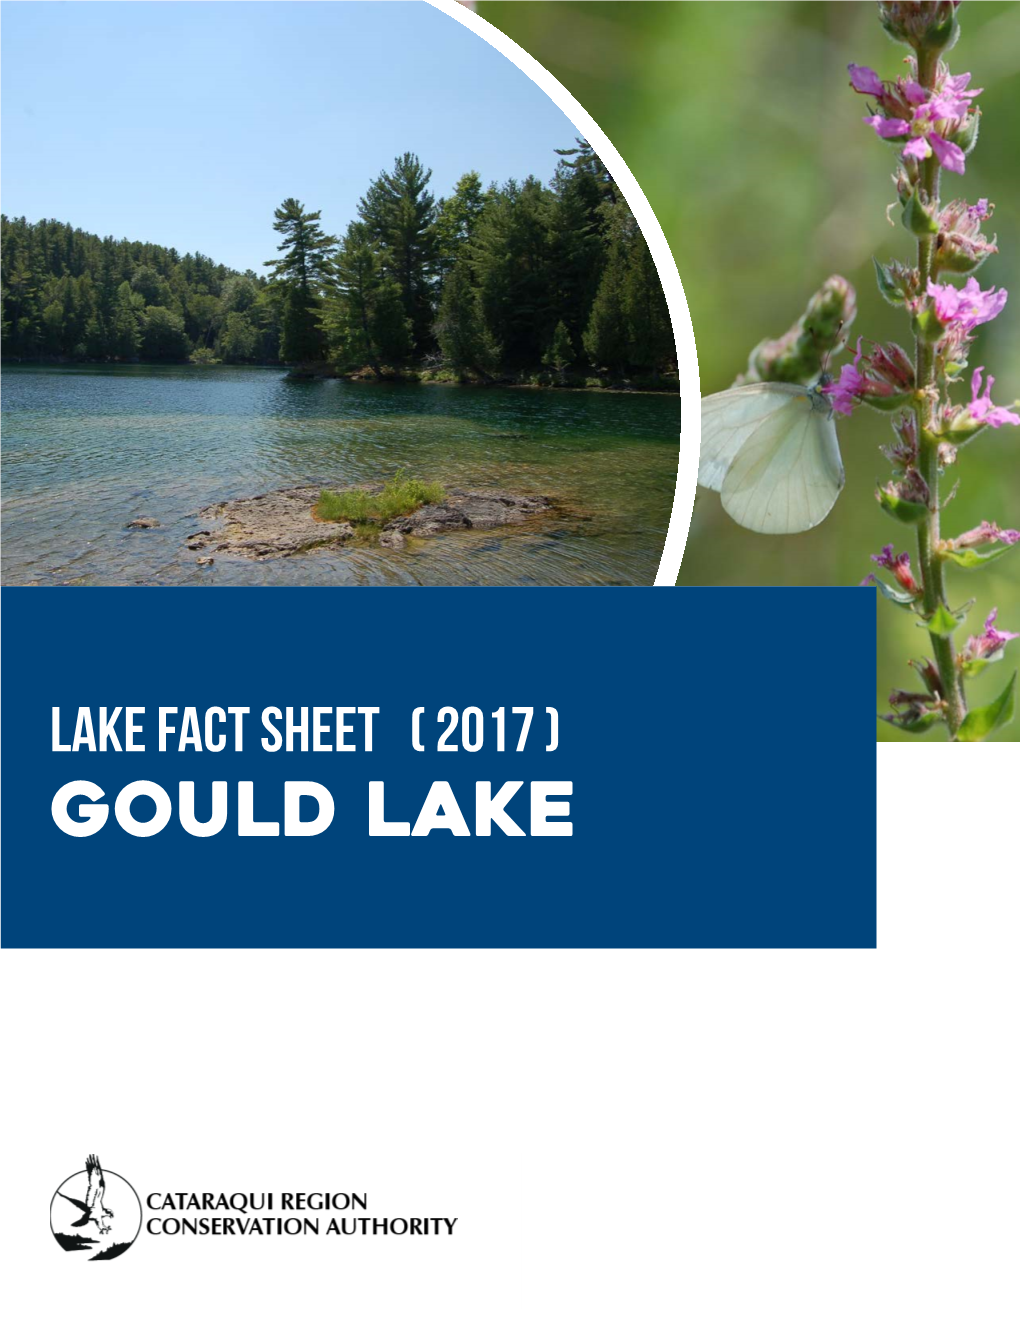 Gould Lake Lake Fact Sheet